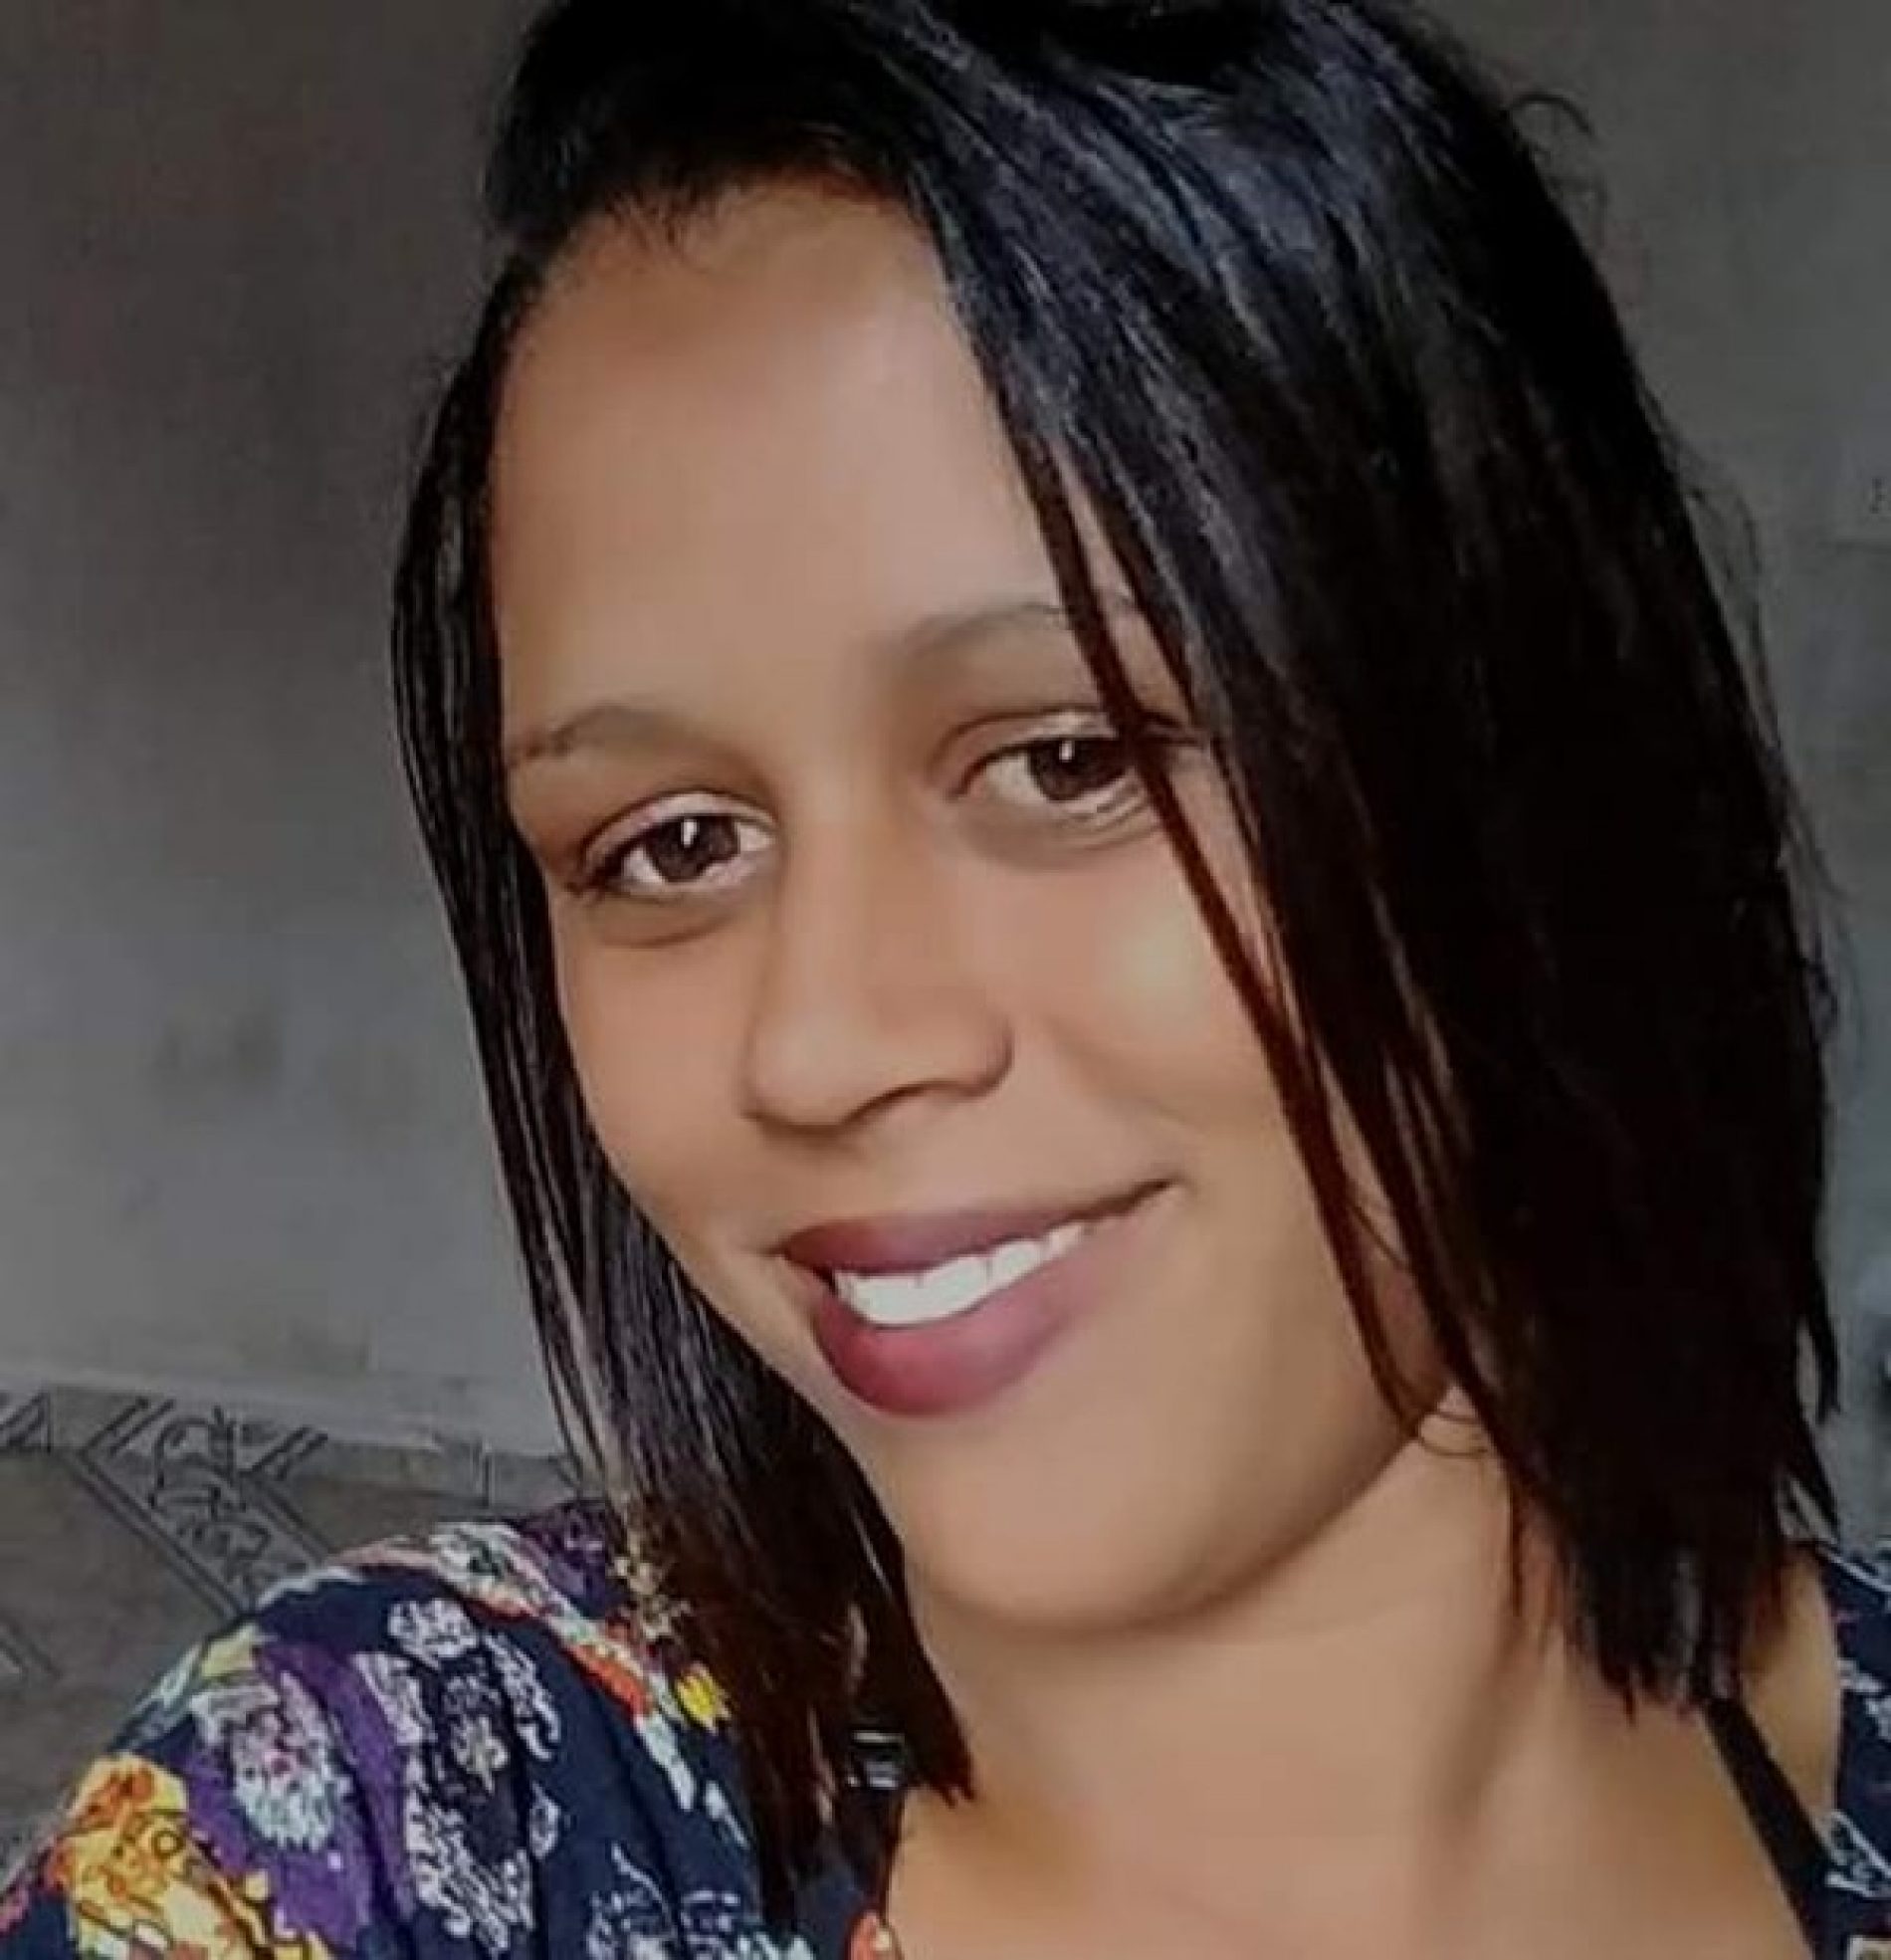 TRAGÉDIA SP: Mulher é morta após briga por levar bolo e não salgado a festa, diz polícia